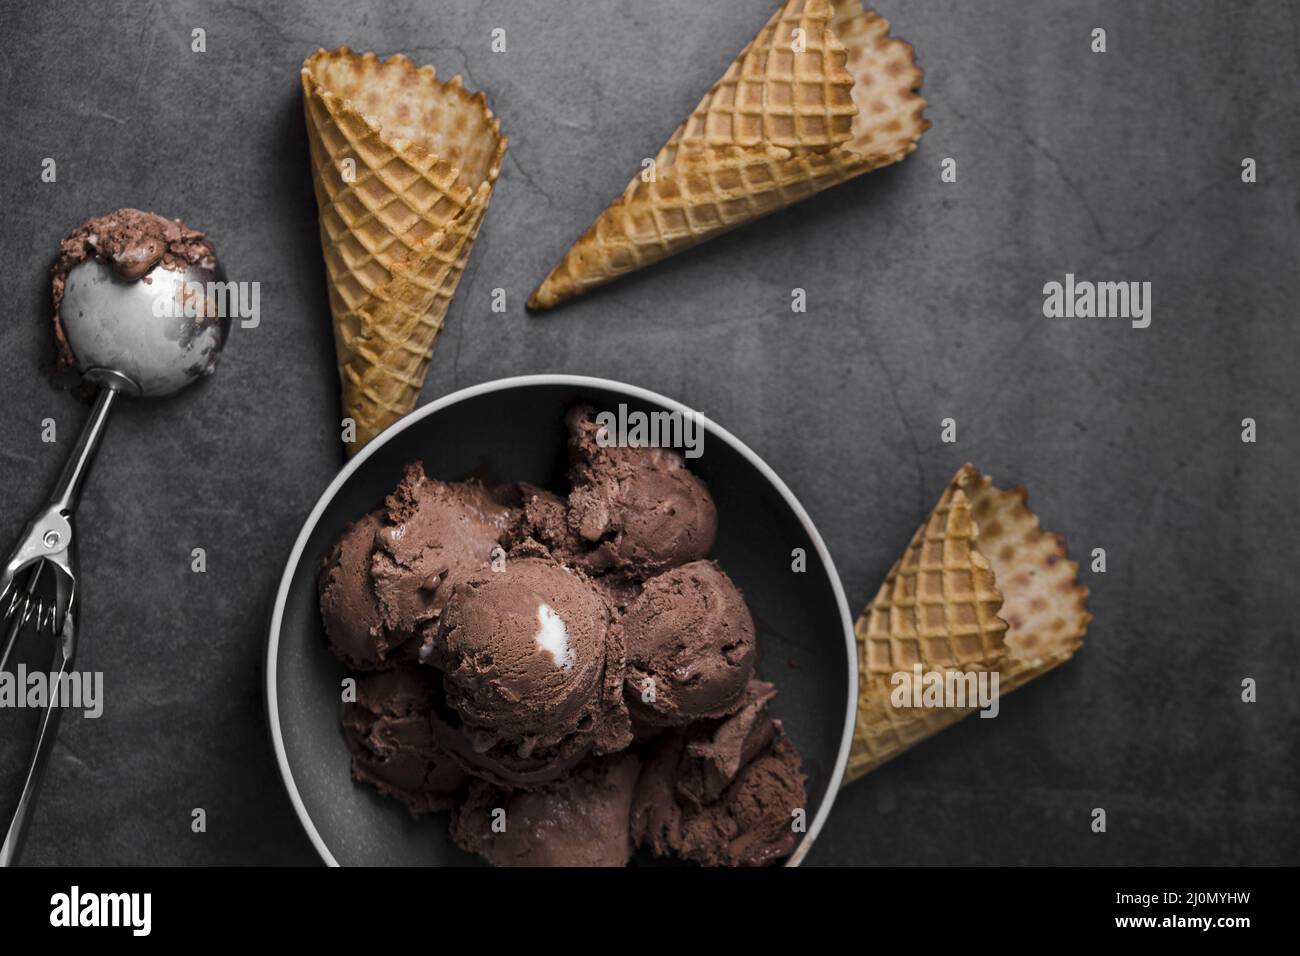 Bowl with ice cream scoops beside ice cream cones Stock Photo